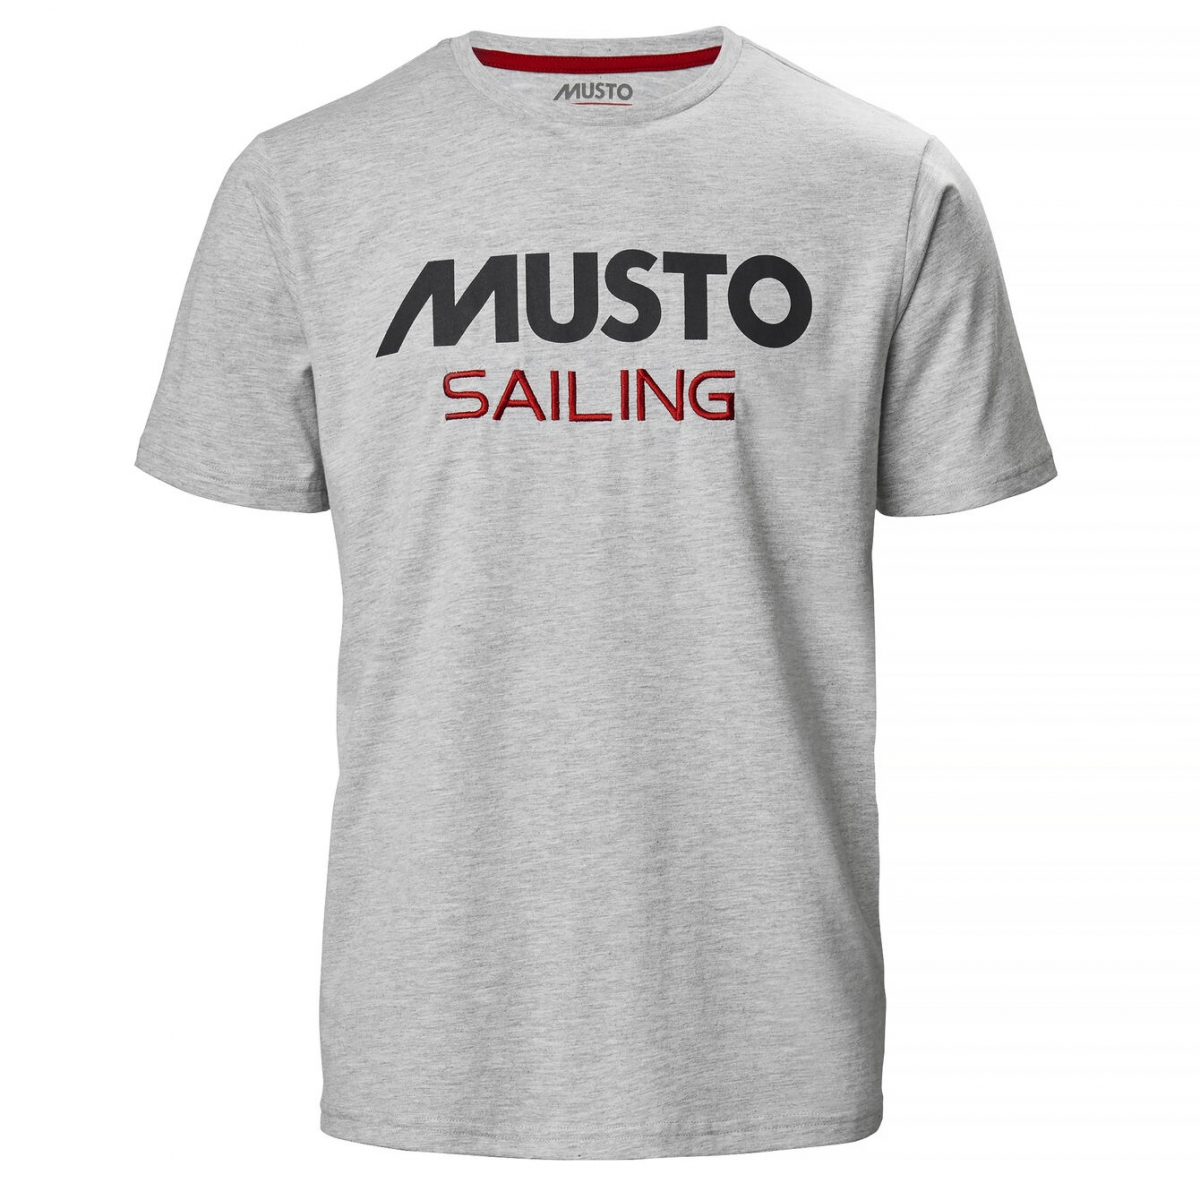 Musto - Musto tee Sailing | shirt